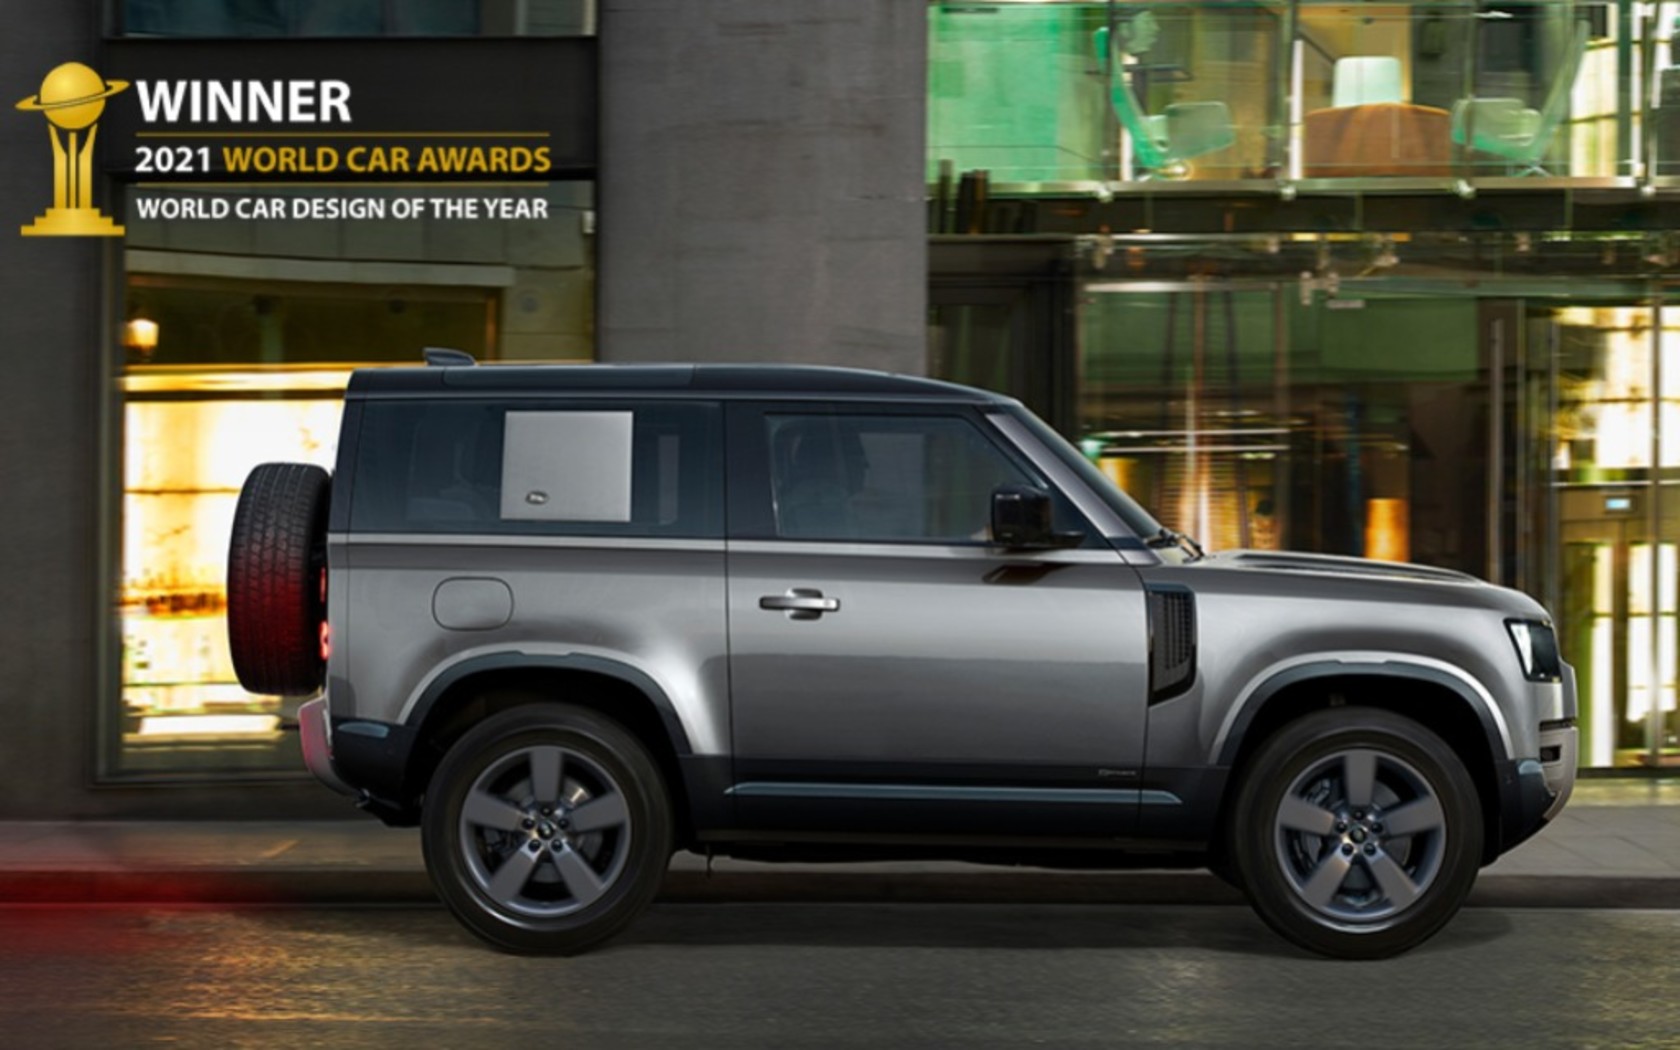 Land Rover Defender Meunang Penghargaan Desain Otomotif Pangsaéna 2021 Dunya